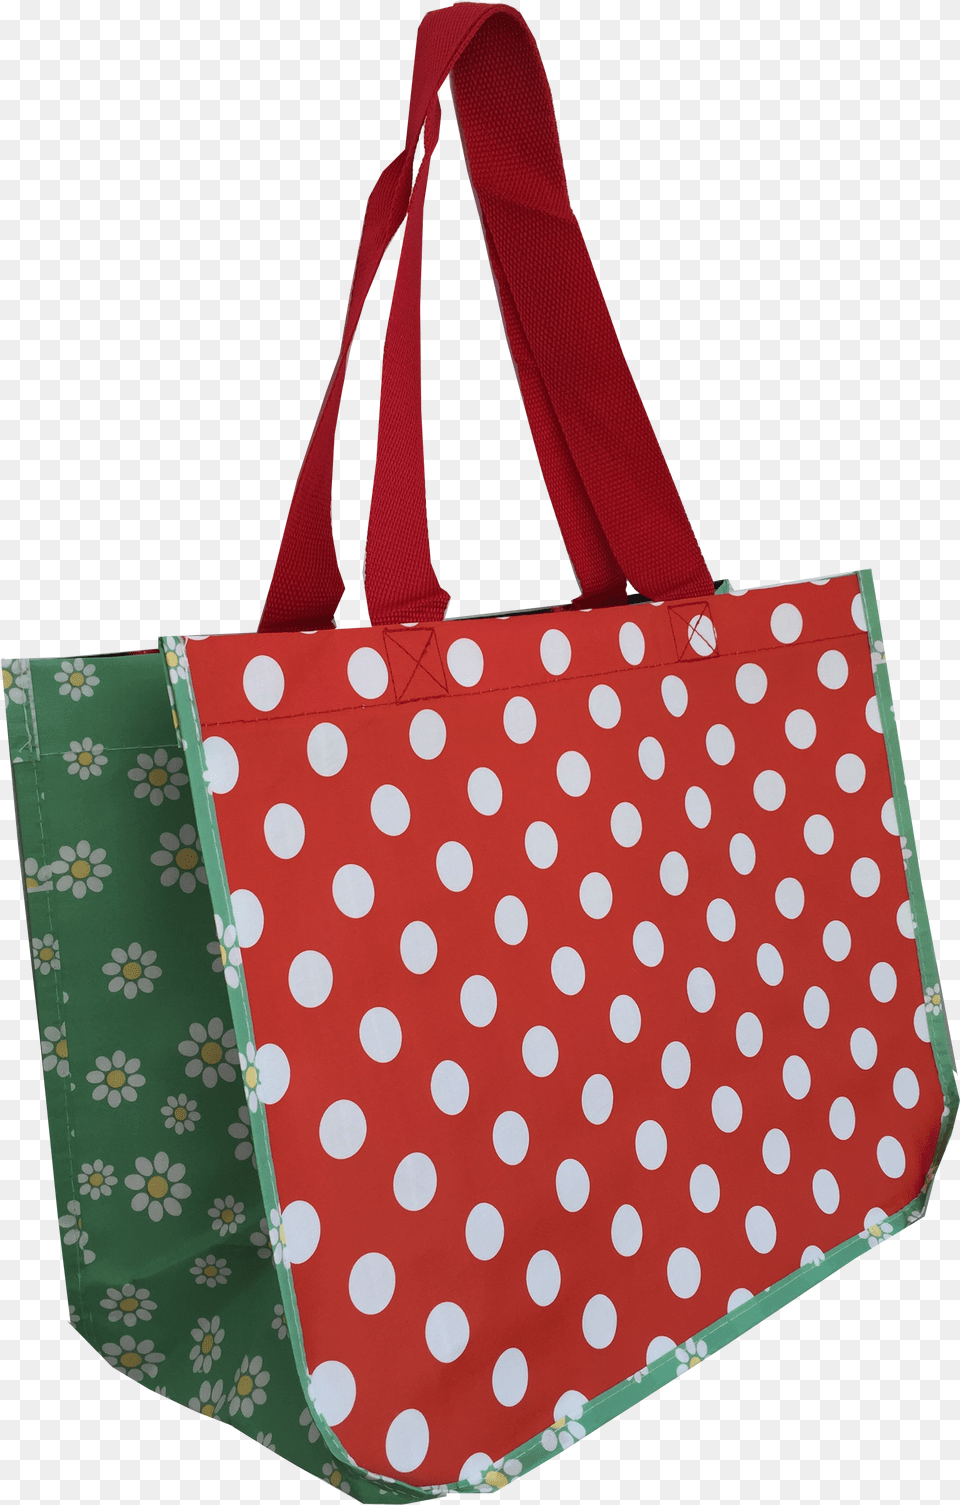 Shoulder Bag, Accessories, Handbag, Tote Bag, Purse Free Transparent Png